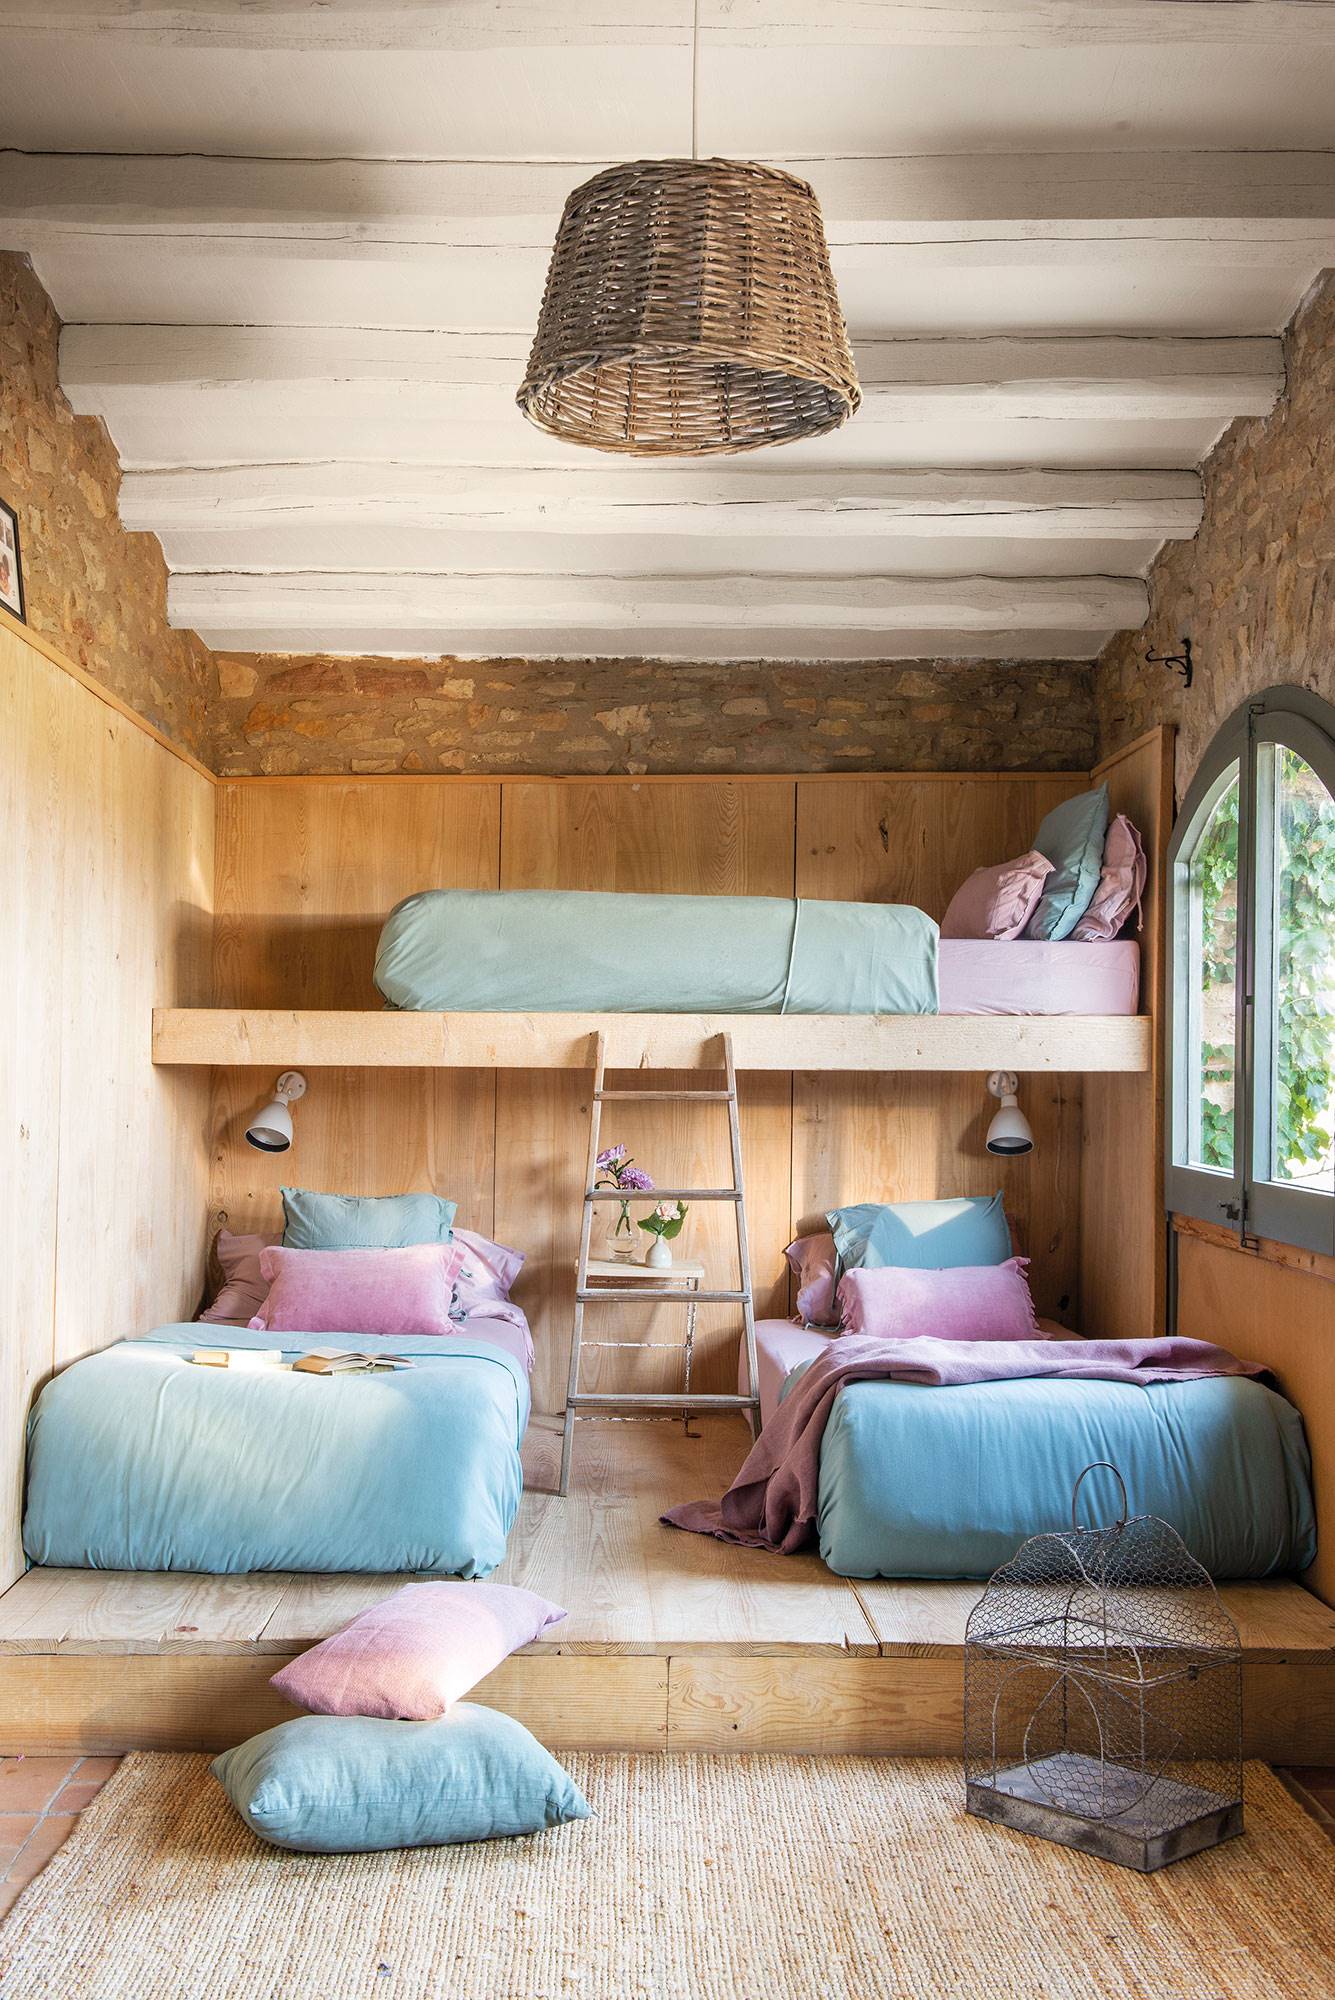 Dormitorio infantil con tres camas en litera de estilo rústico.